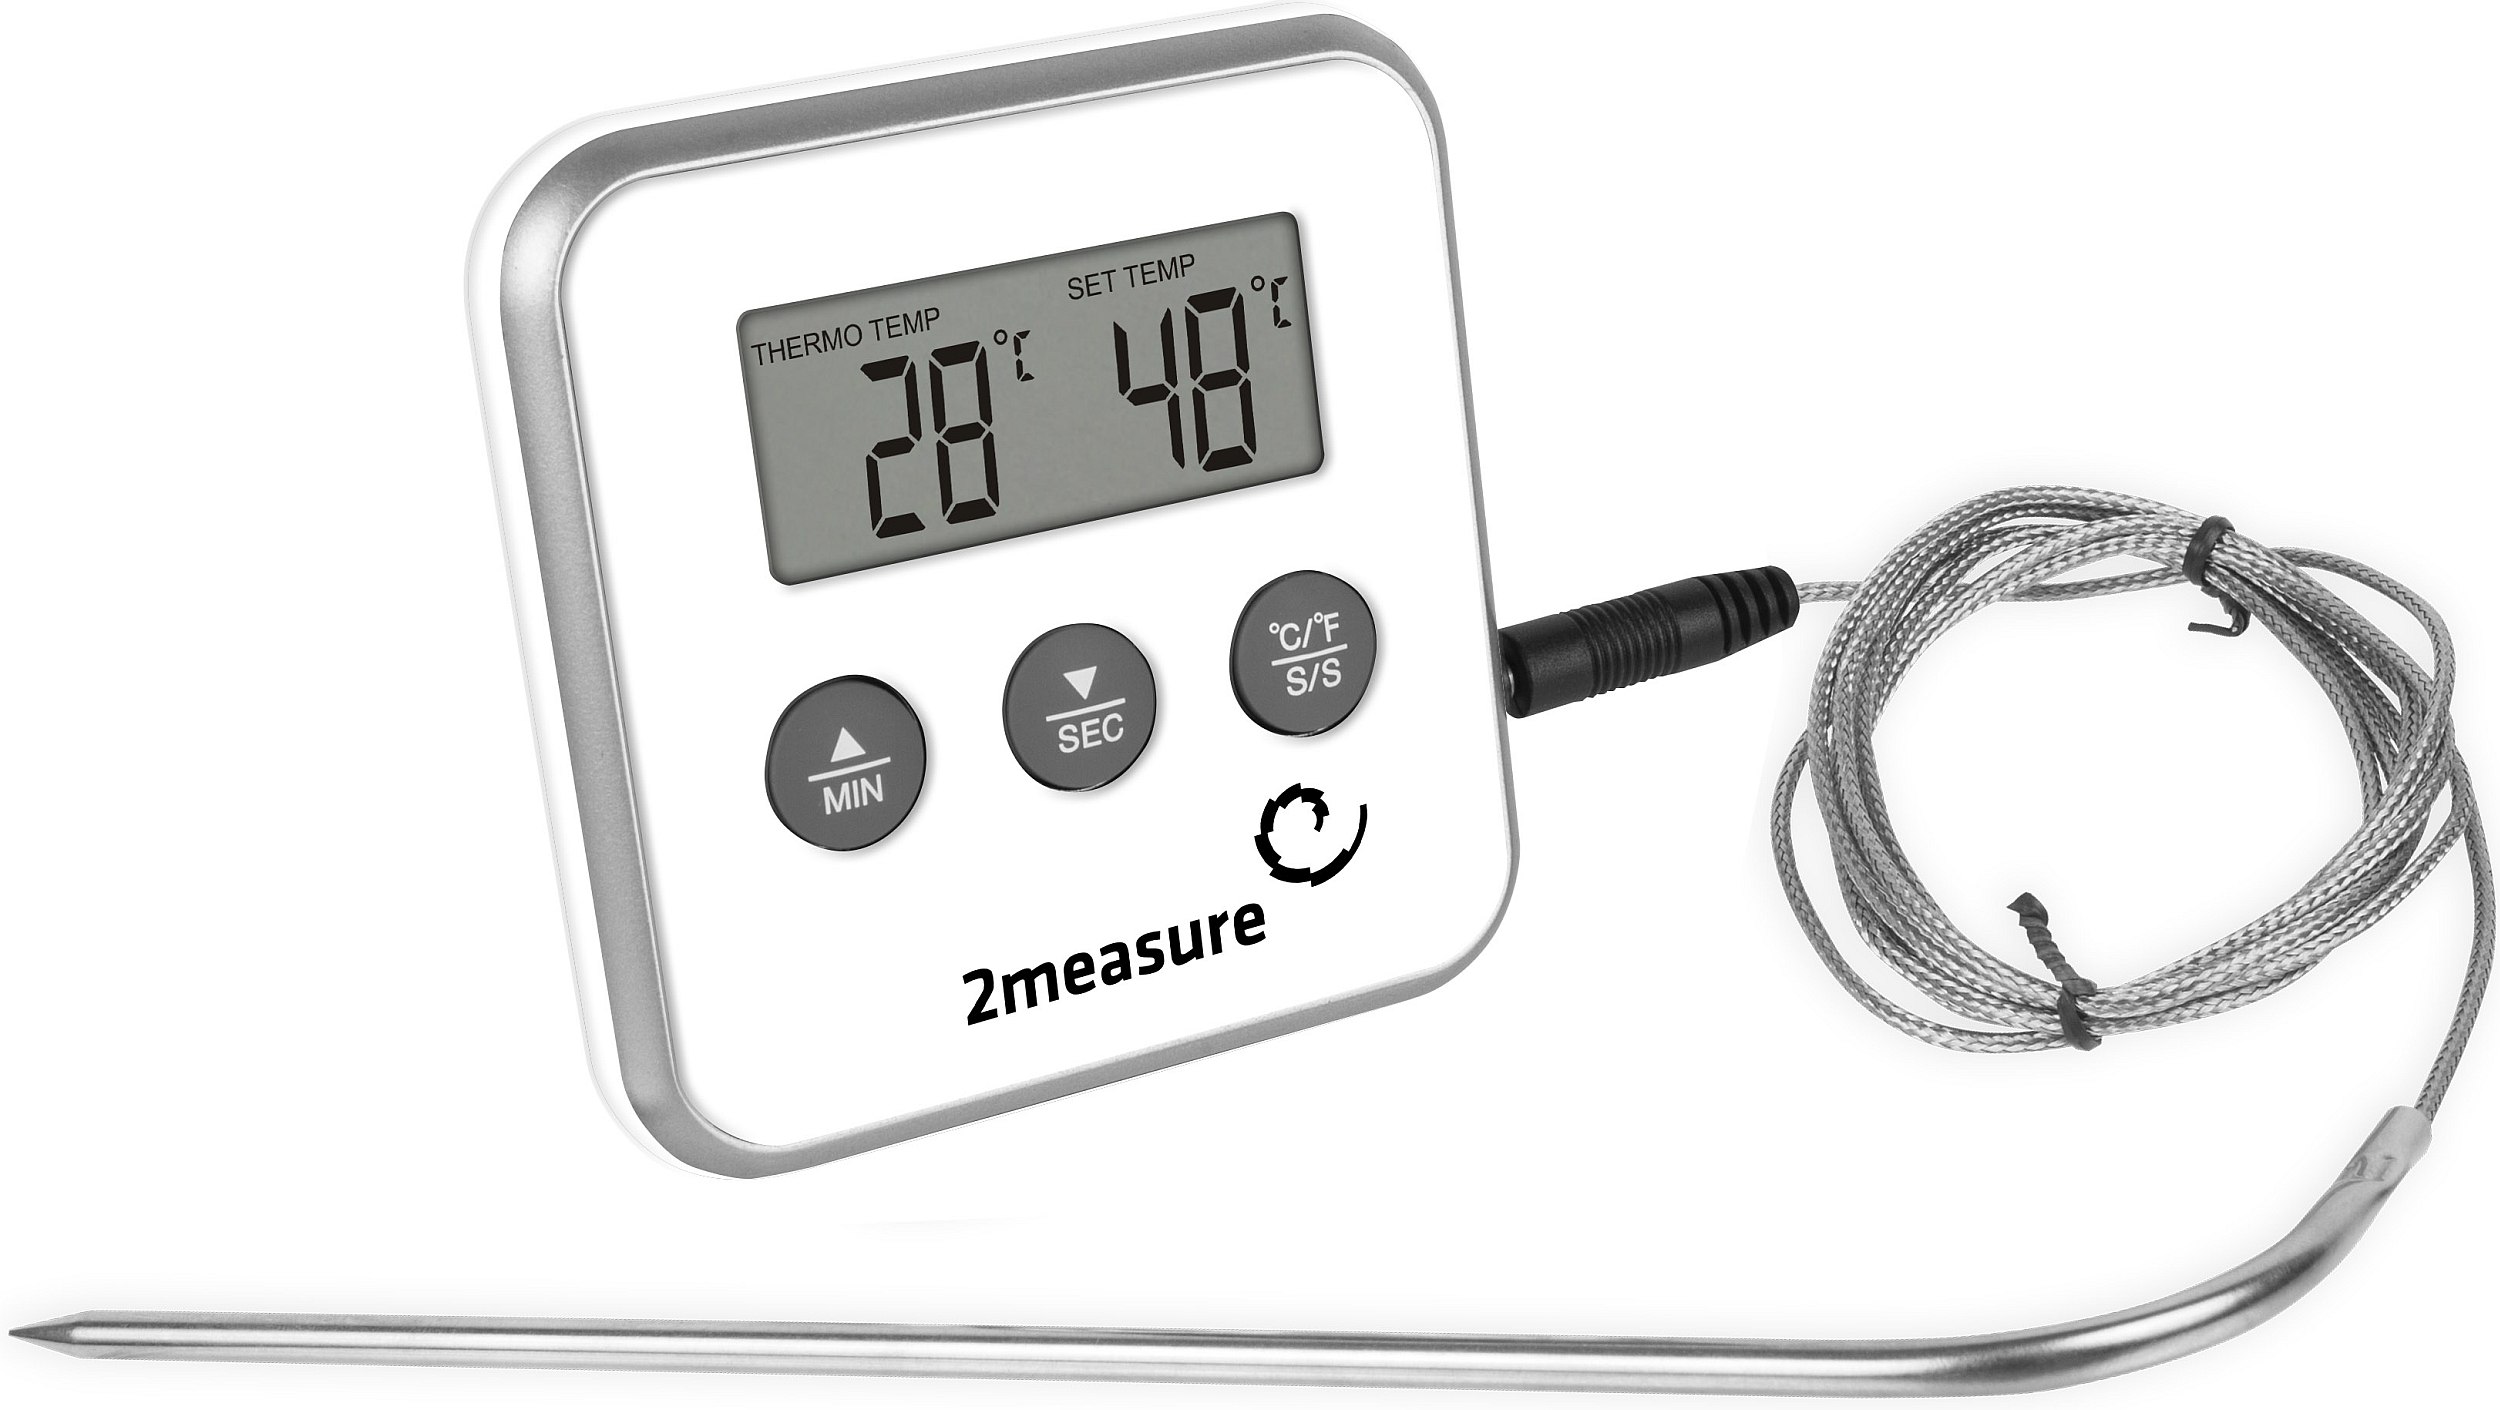 Электронный термометр со звуковым сигналом о превышении температуры.